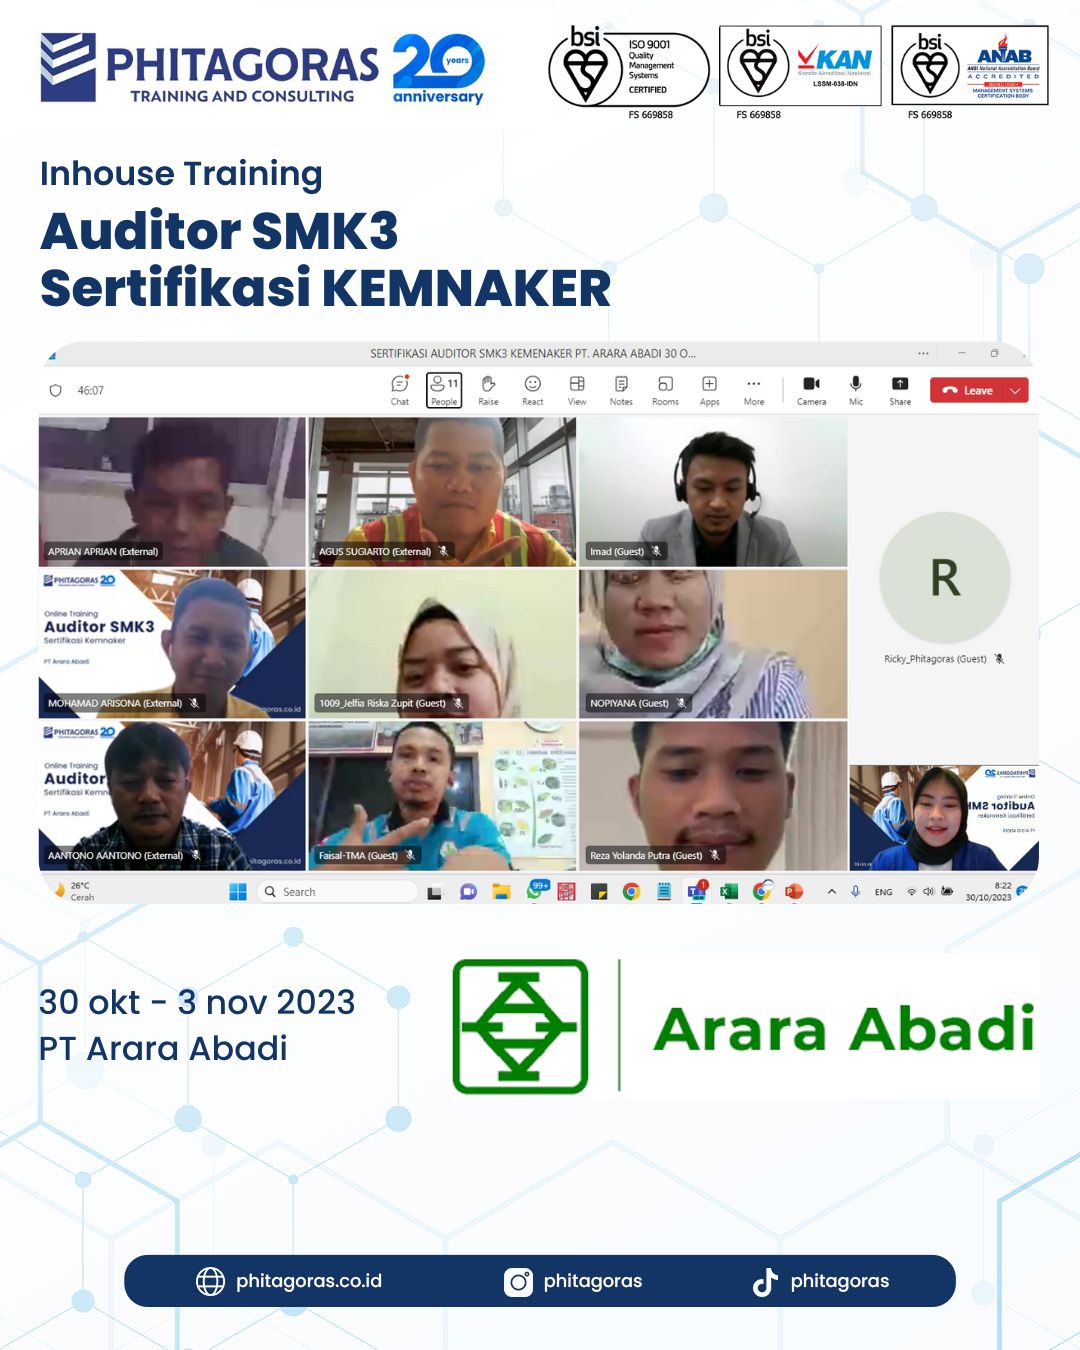 Inhouse Training Auditor SMK3 Sertifikasi KEMNAKER - PT Arara Abadi